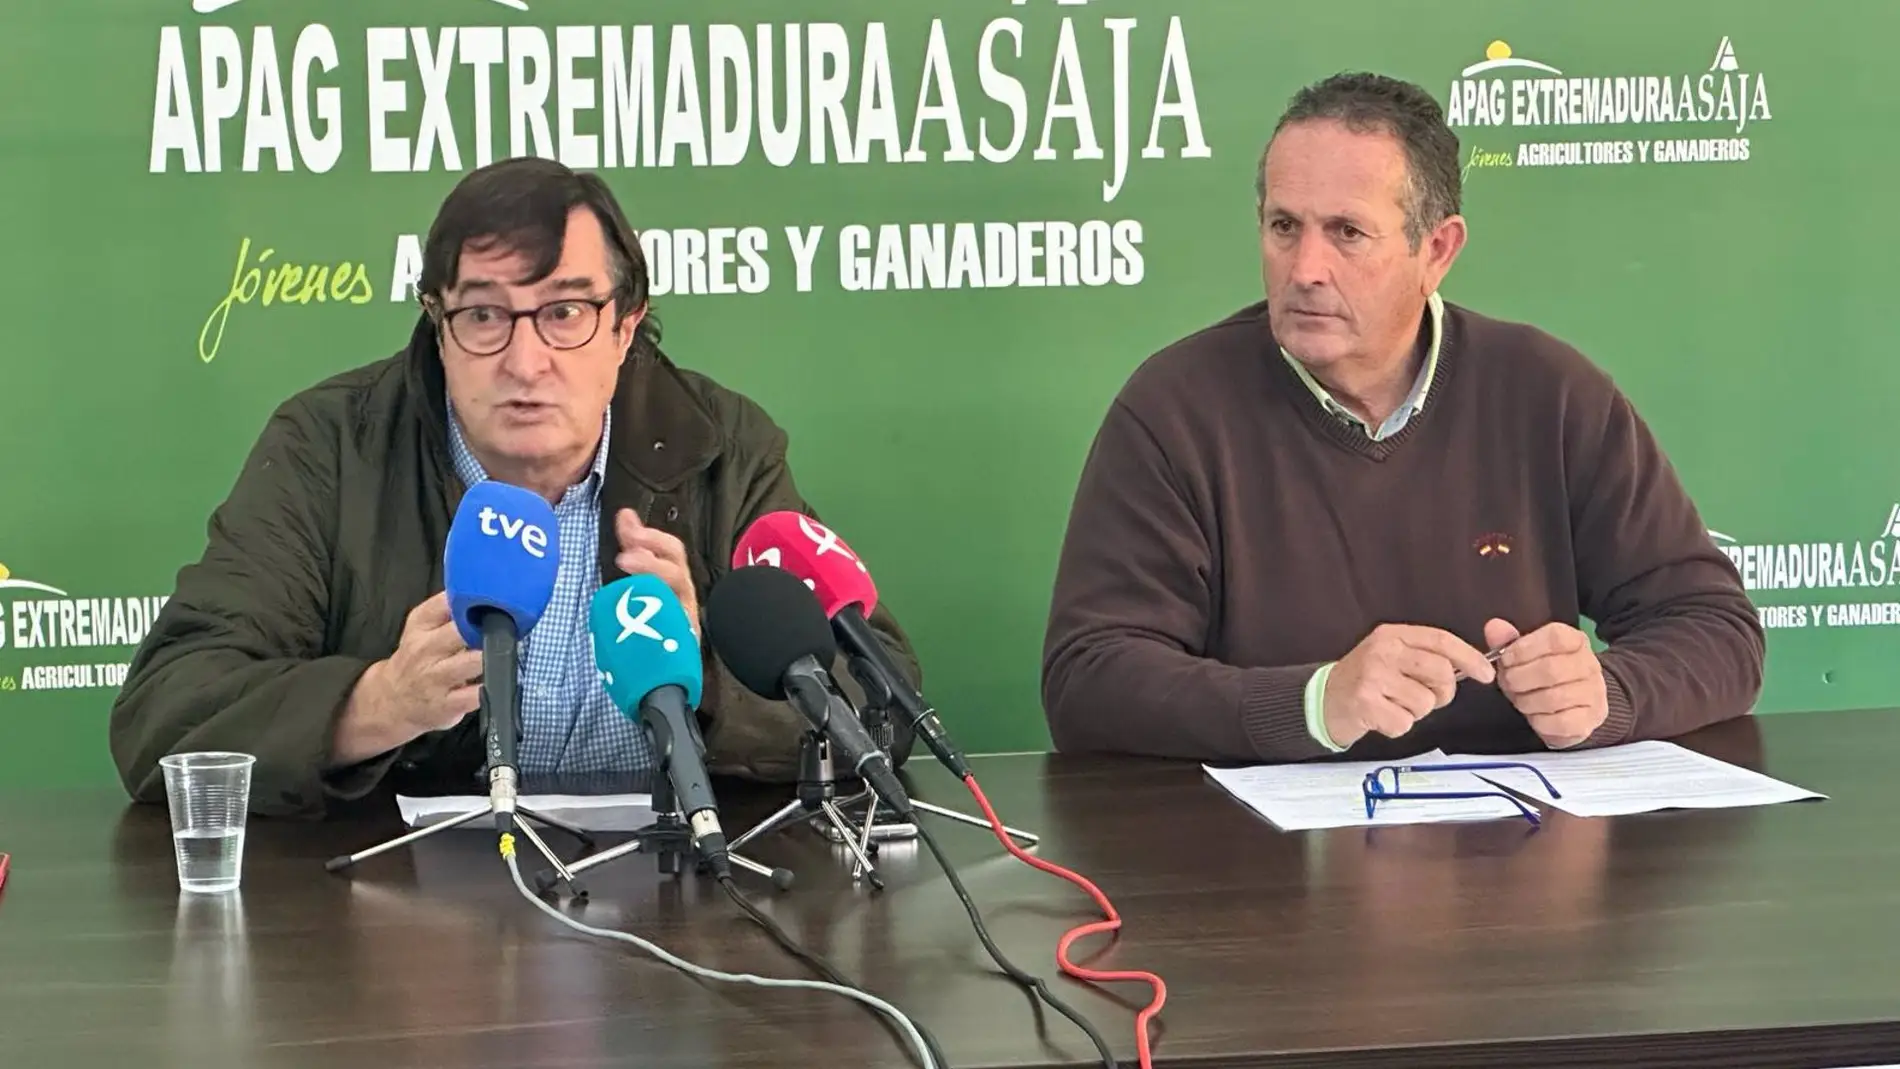 APAG Extremadura ASAJA anuncia cortes de carreteras, UPA-UCE comparte las reivindicaciones pero no respalda la unilateralidad